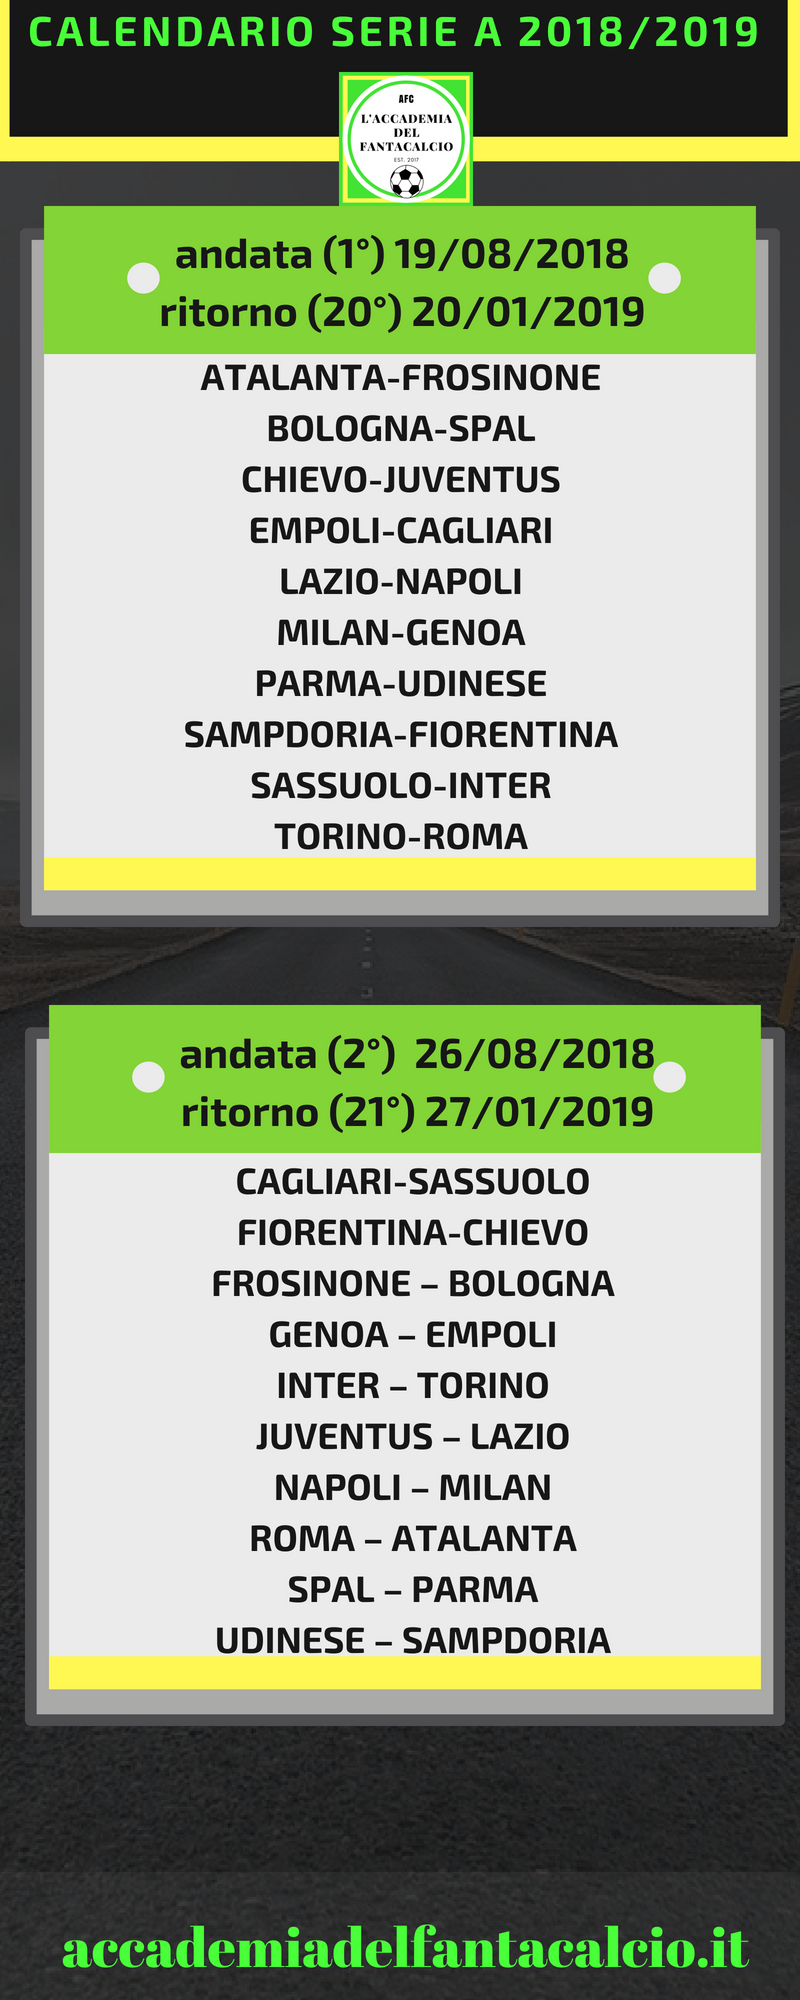 1 - Calendario Serie A 2018/2019